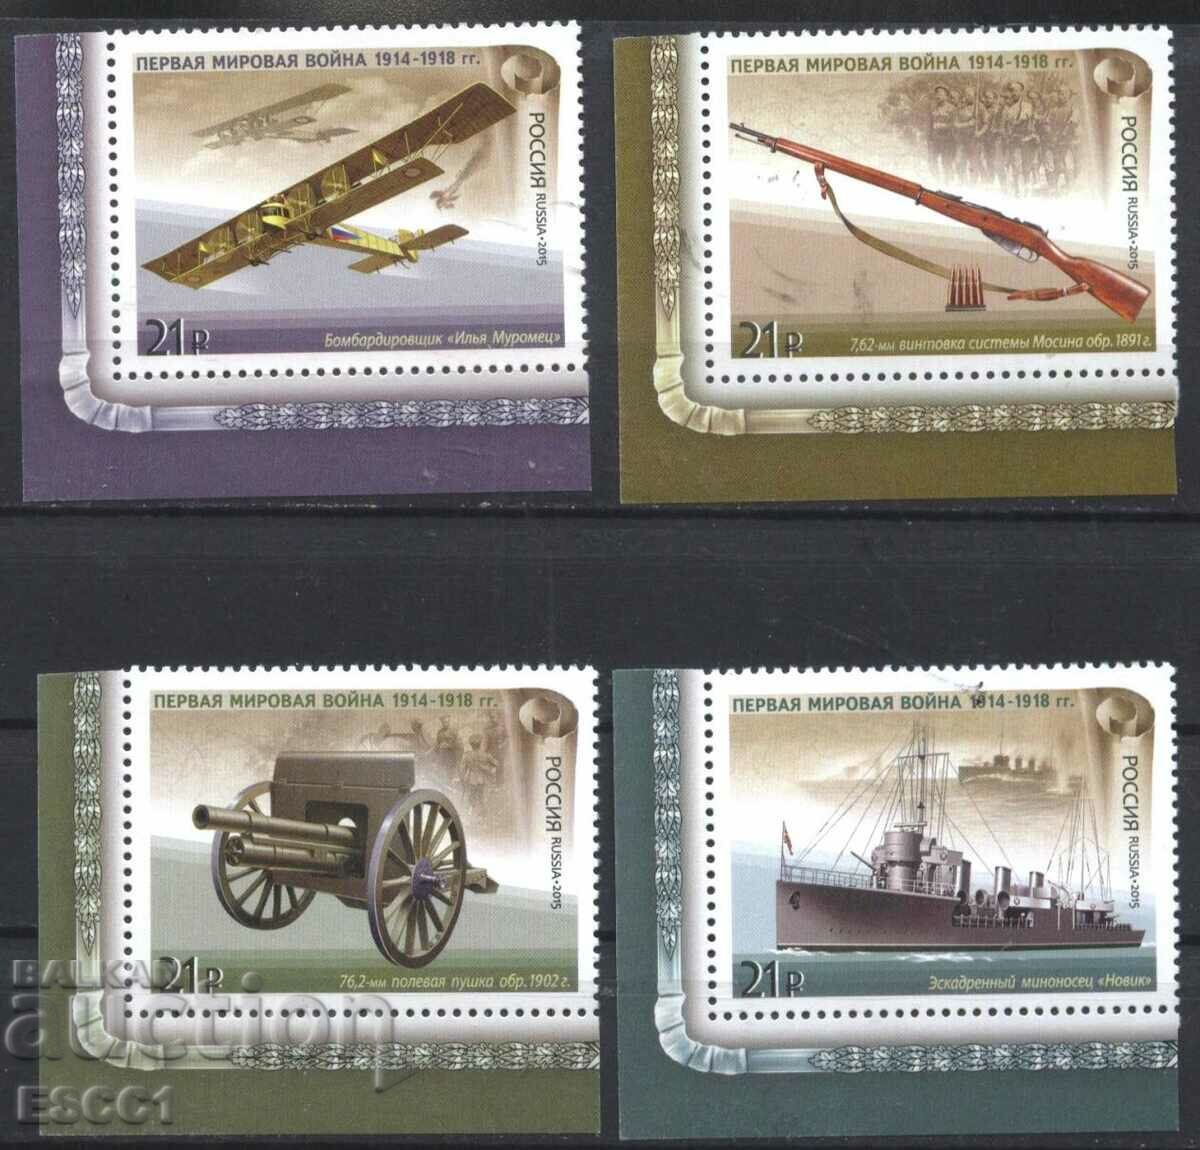 Clean Stamps Αεροσκάφος Πρώτου Παγκοσμίου Πολέμου 2015 από τη Ρωσία